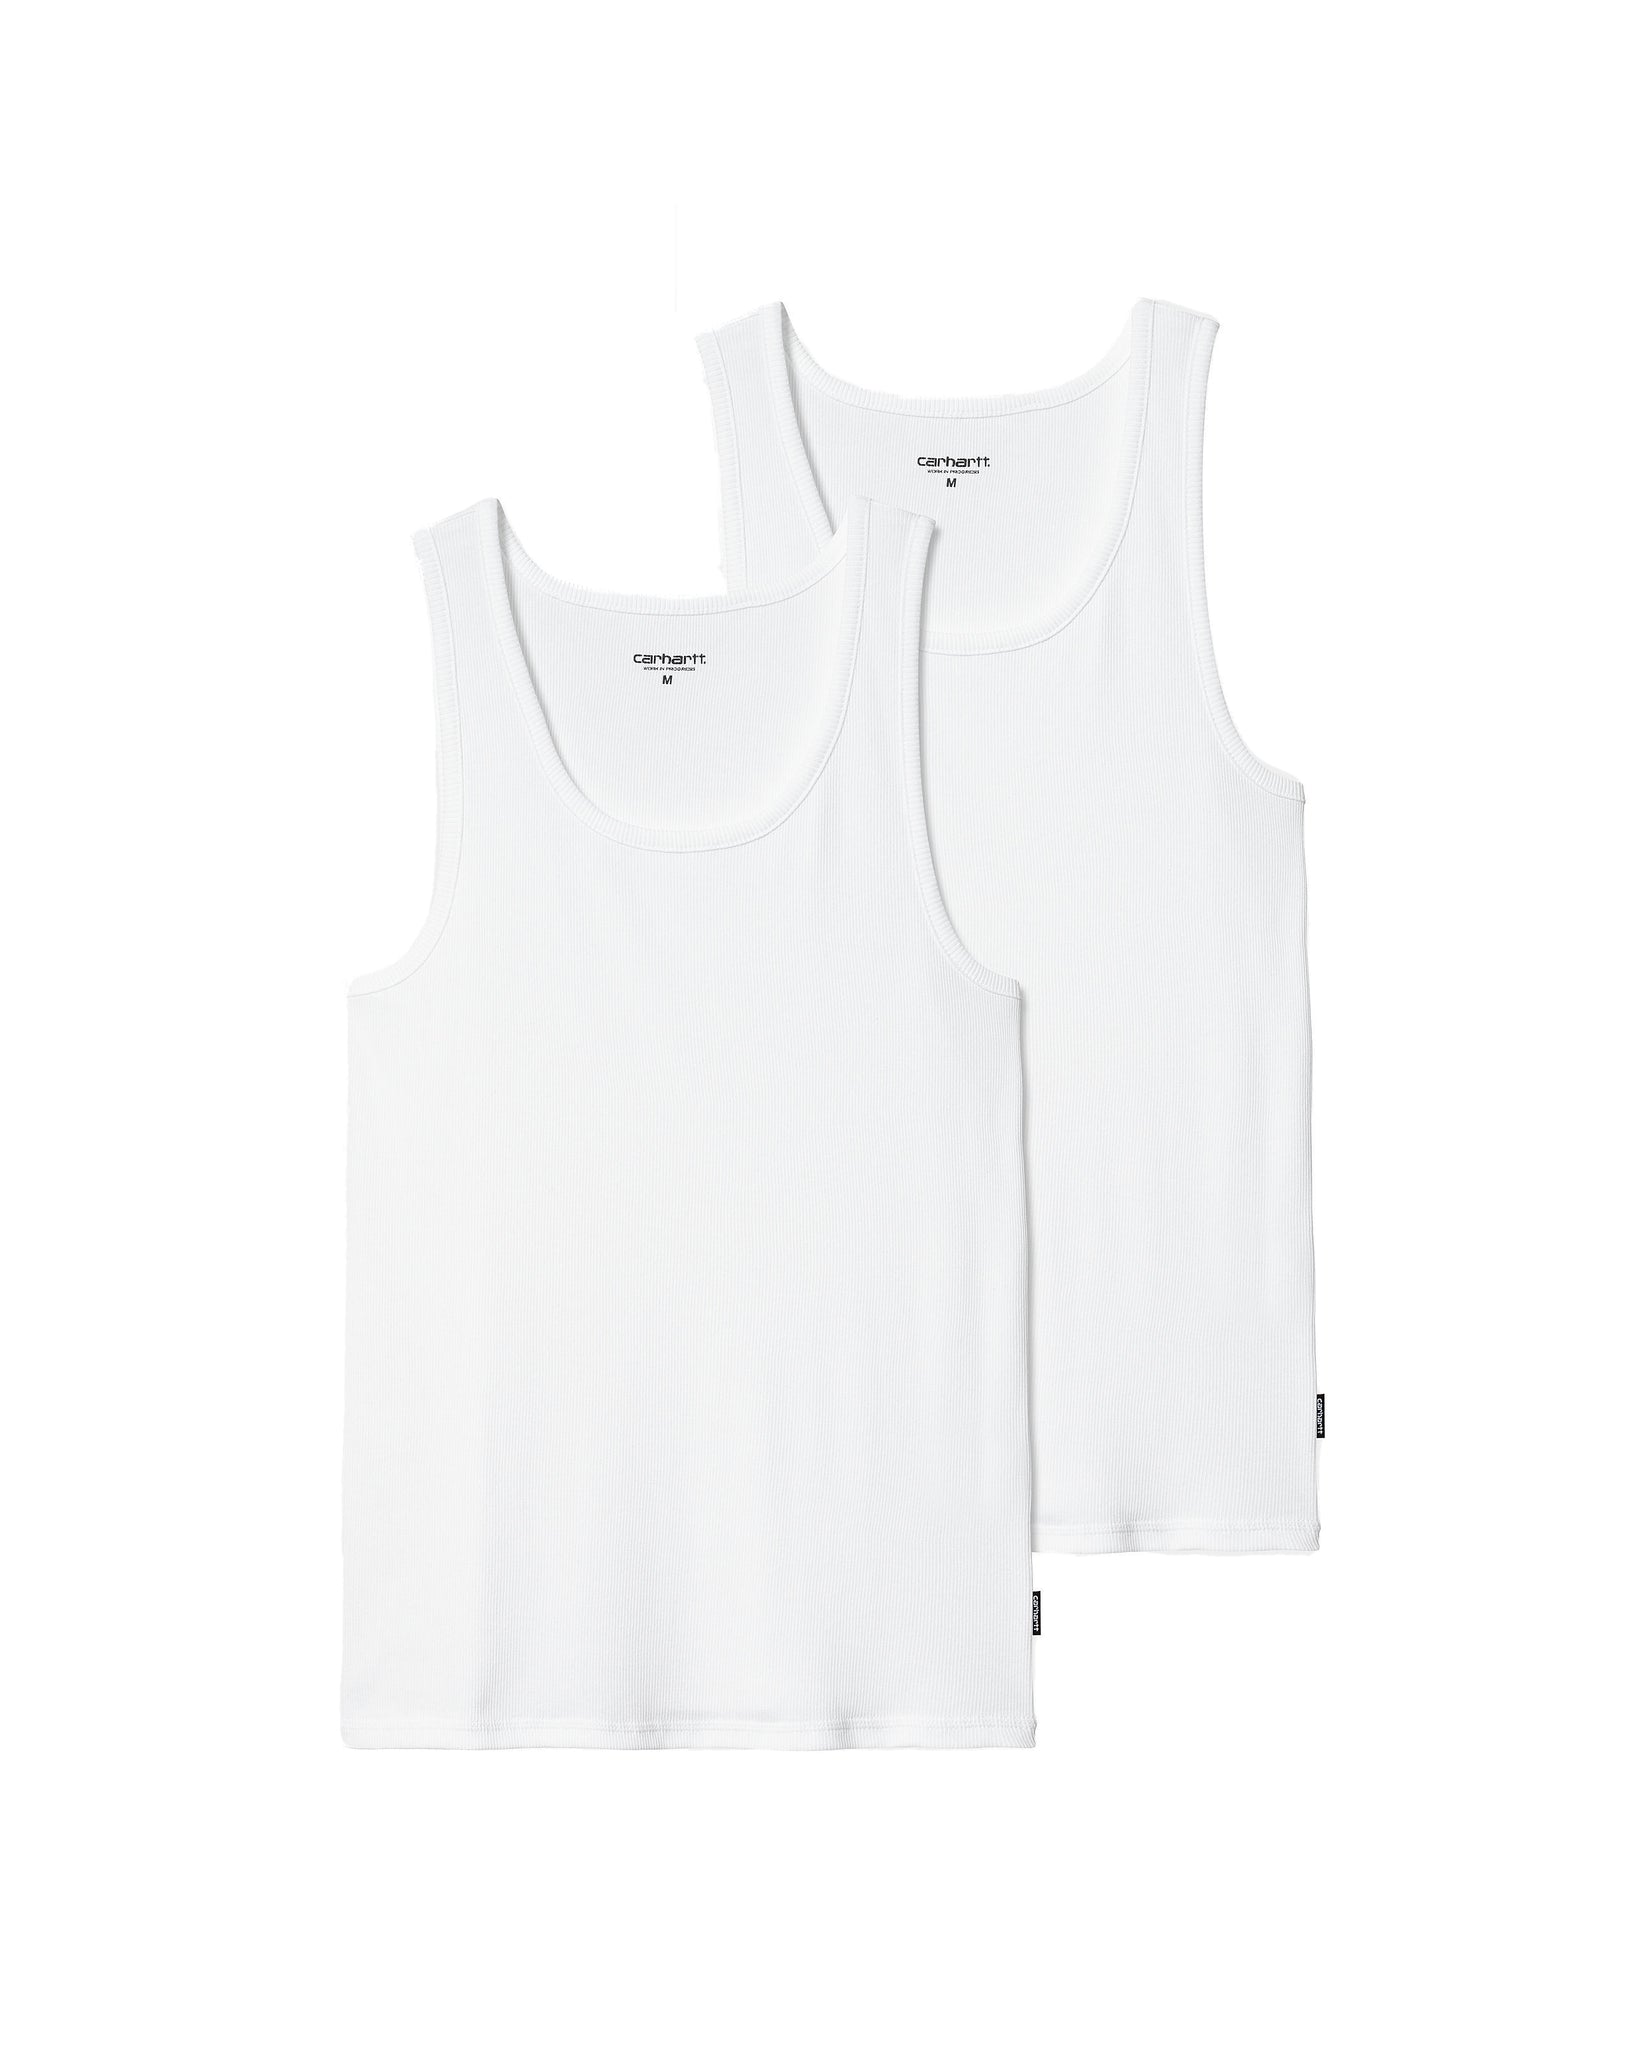 Camisetas de tirantes A-Shirt (Pack de 2) - Blanco/Blanco